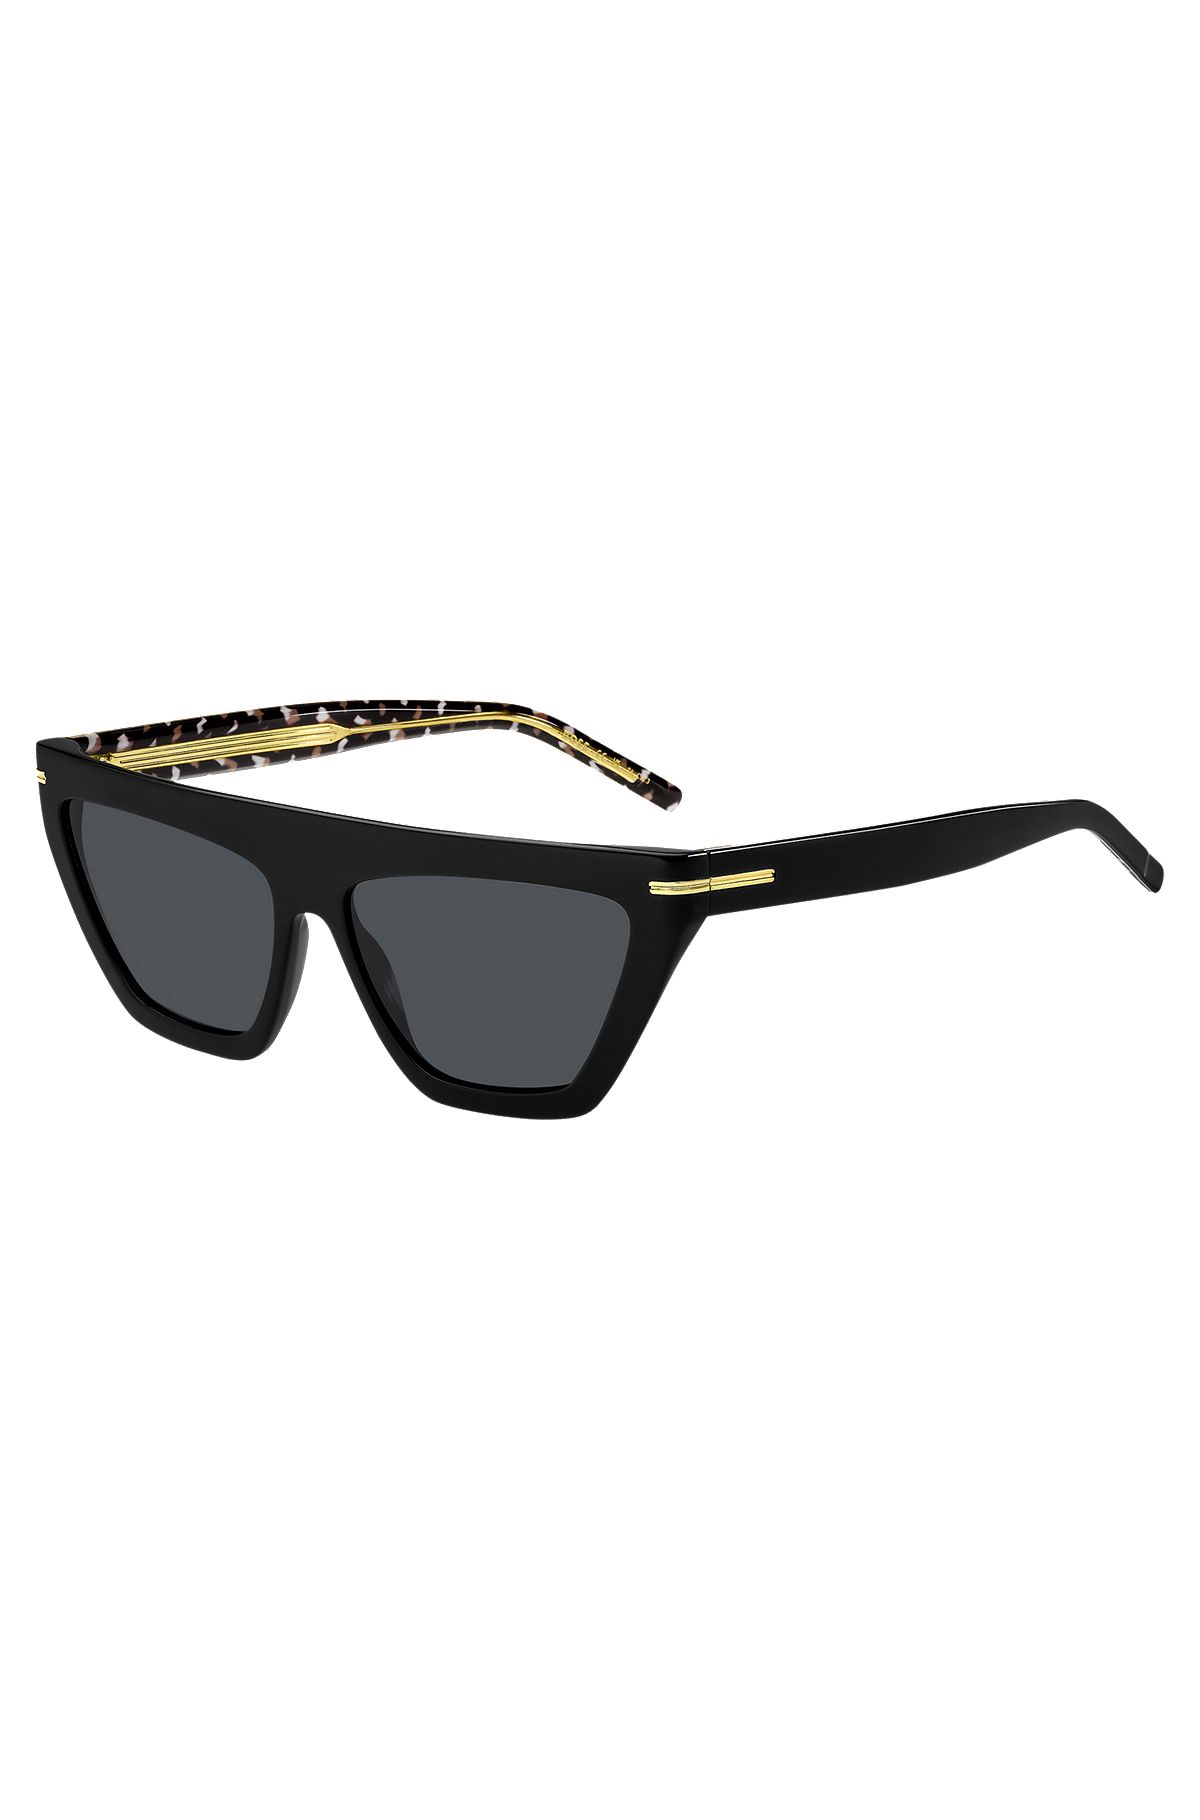 Sonnenbrille aus schwarzem Acetat mit goldfarbenen Details, Schwarz